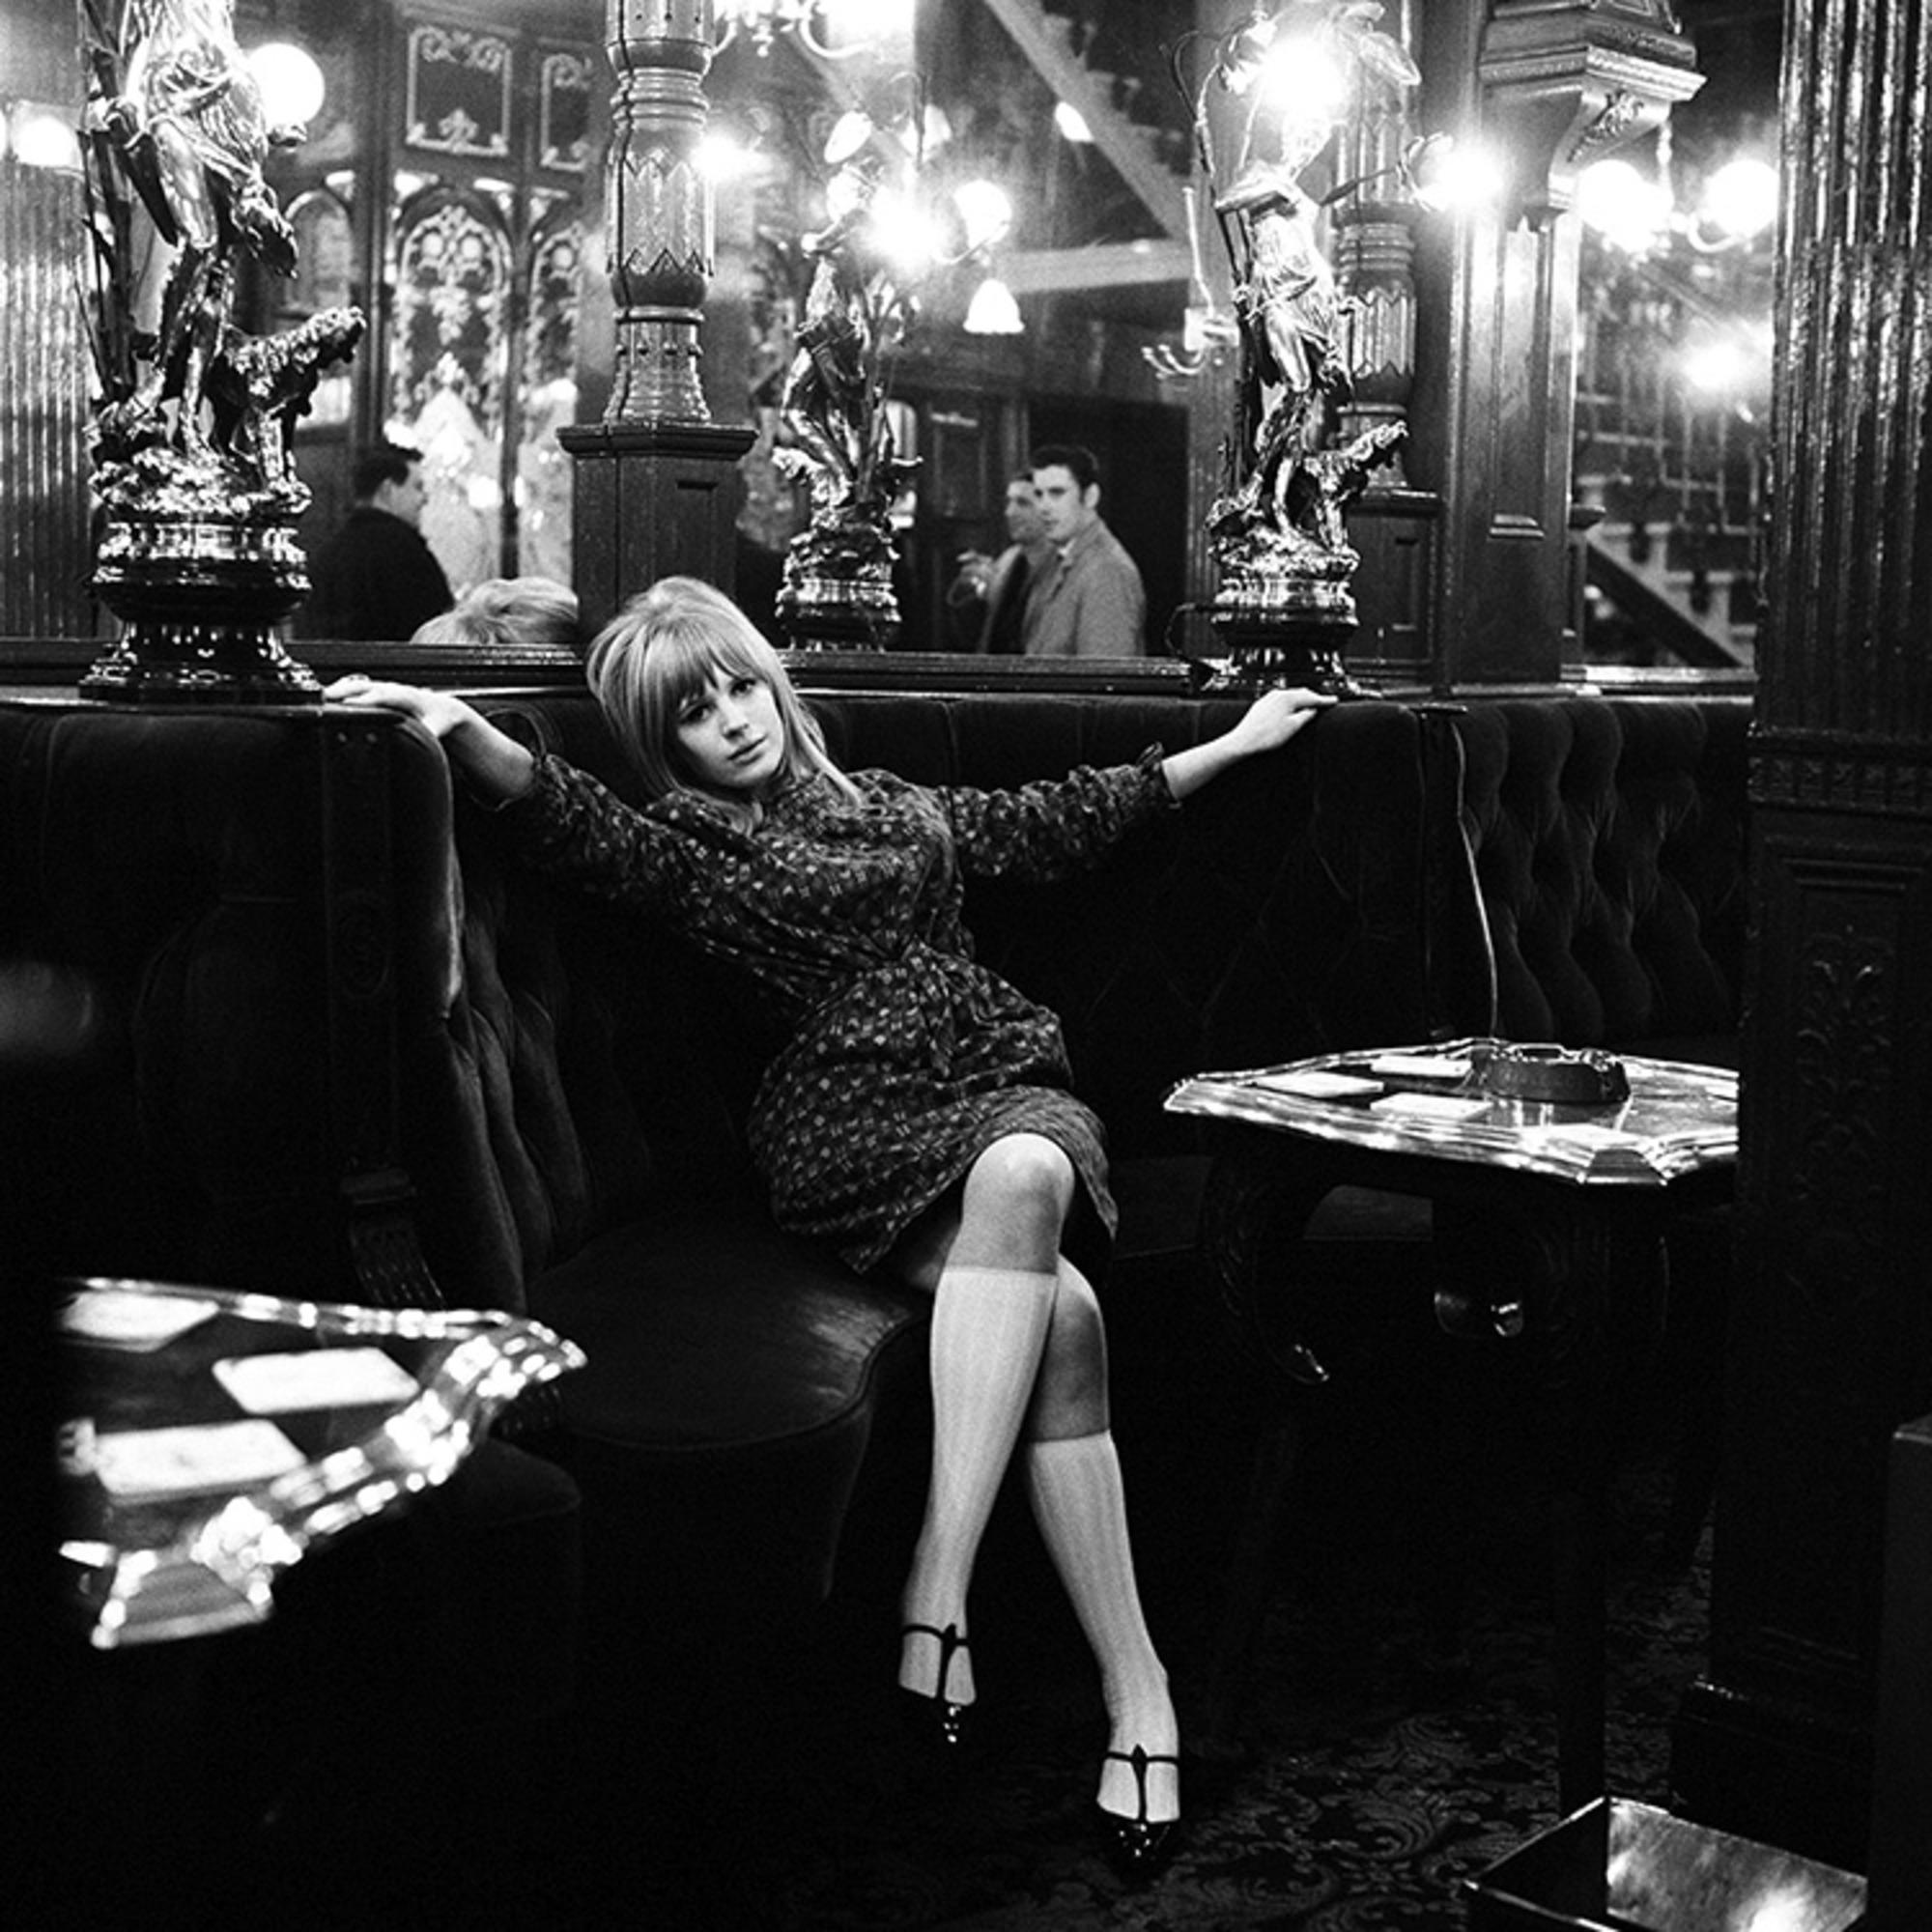 Gelatine-Silber, signiert und nummeriert

Die englische Sängerin, Songwriterin und Schauspielerin Marianne Faithfull, fotografiert im Pub The Salisbury in London, 1964.

Verfügbare Größen:
16" x 20" Auflage von 50
20" x 24" Auflage von 50
30" x 40"